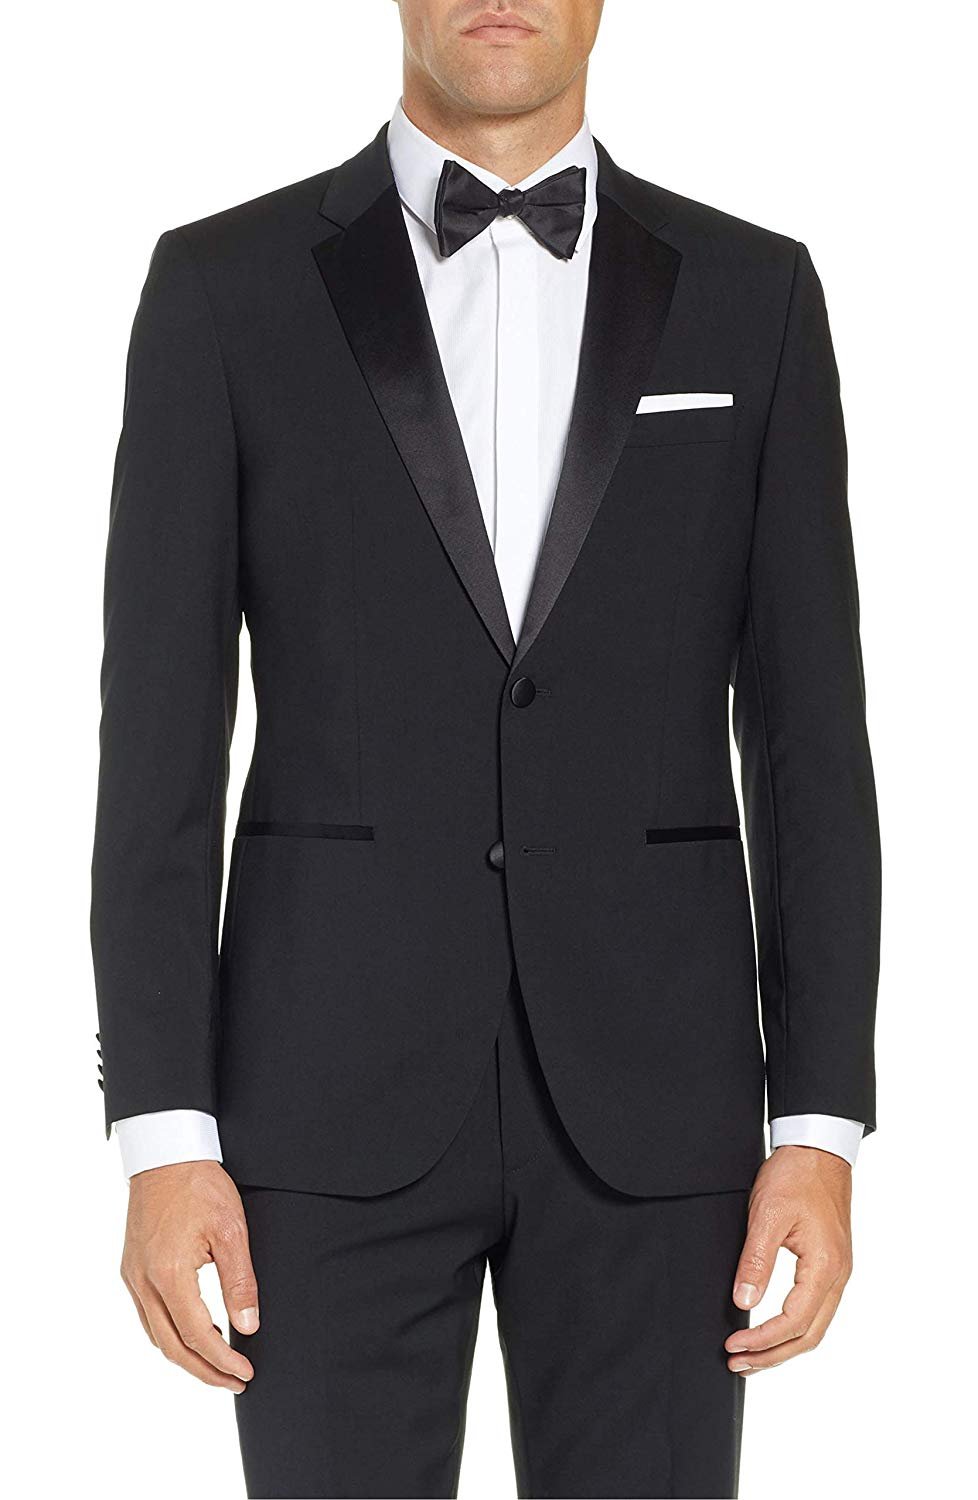 Caravelli Men's Slim Fit Two-Piece Notch Lapel Formal Tuxedo Suit Set ...